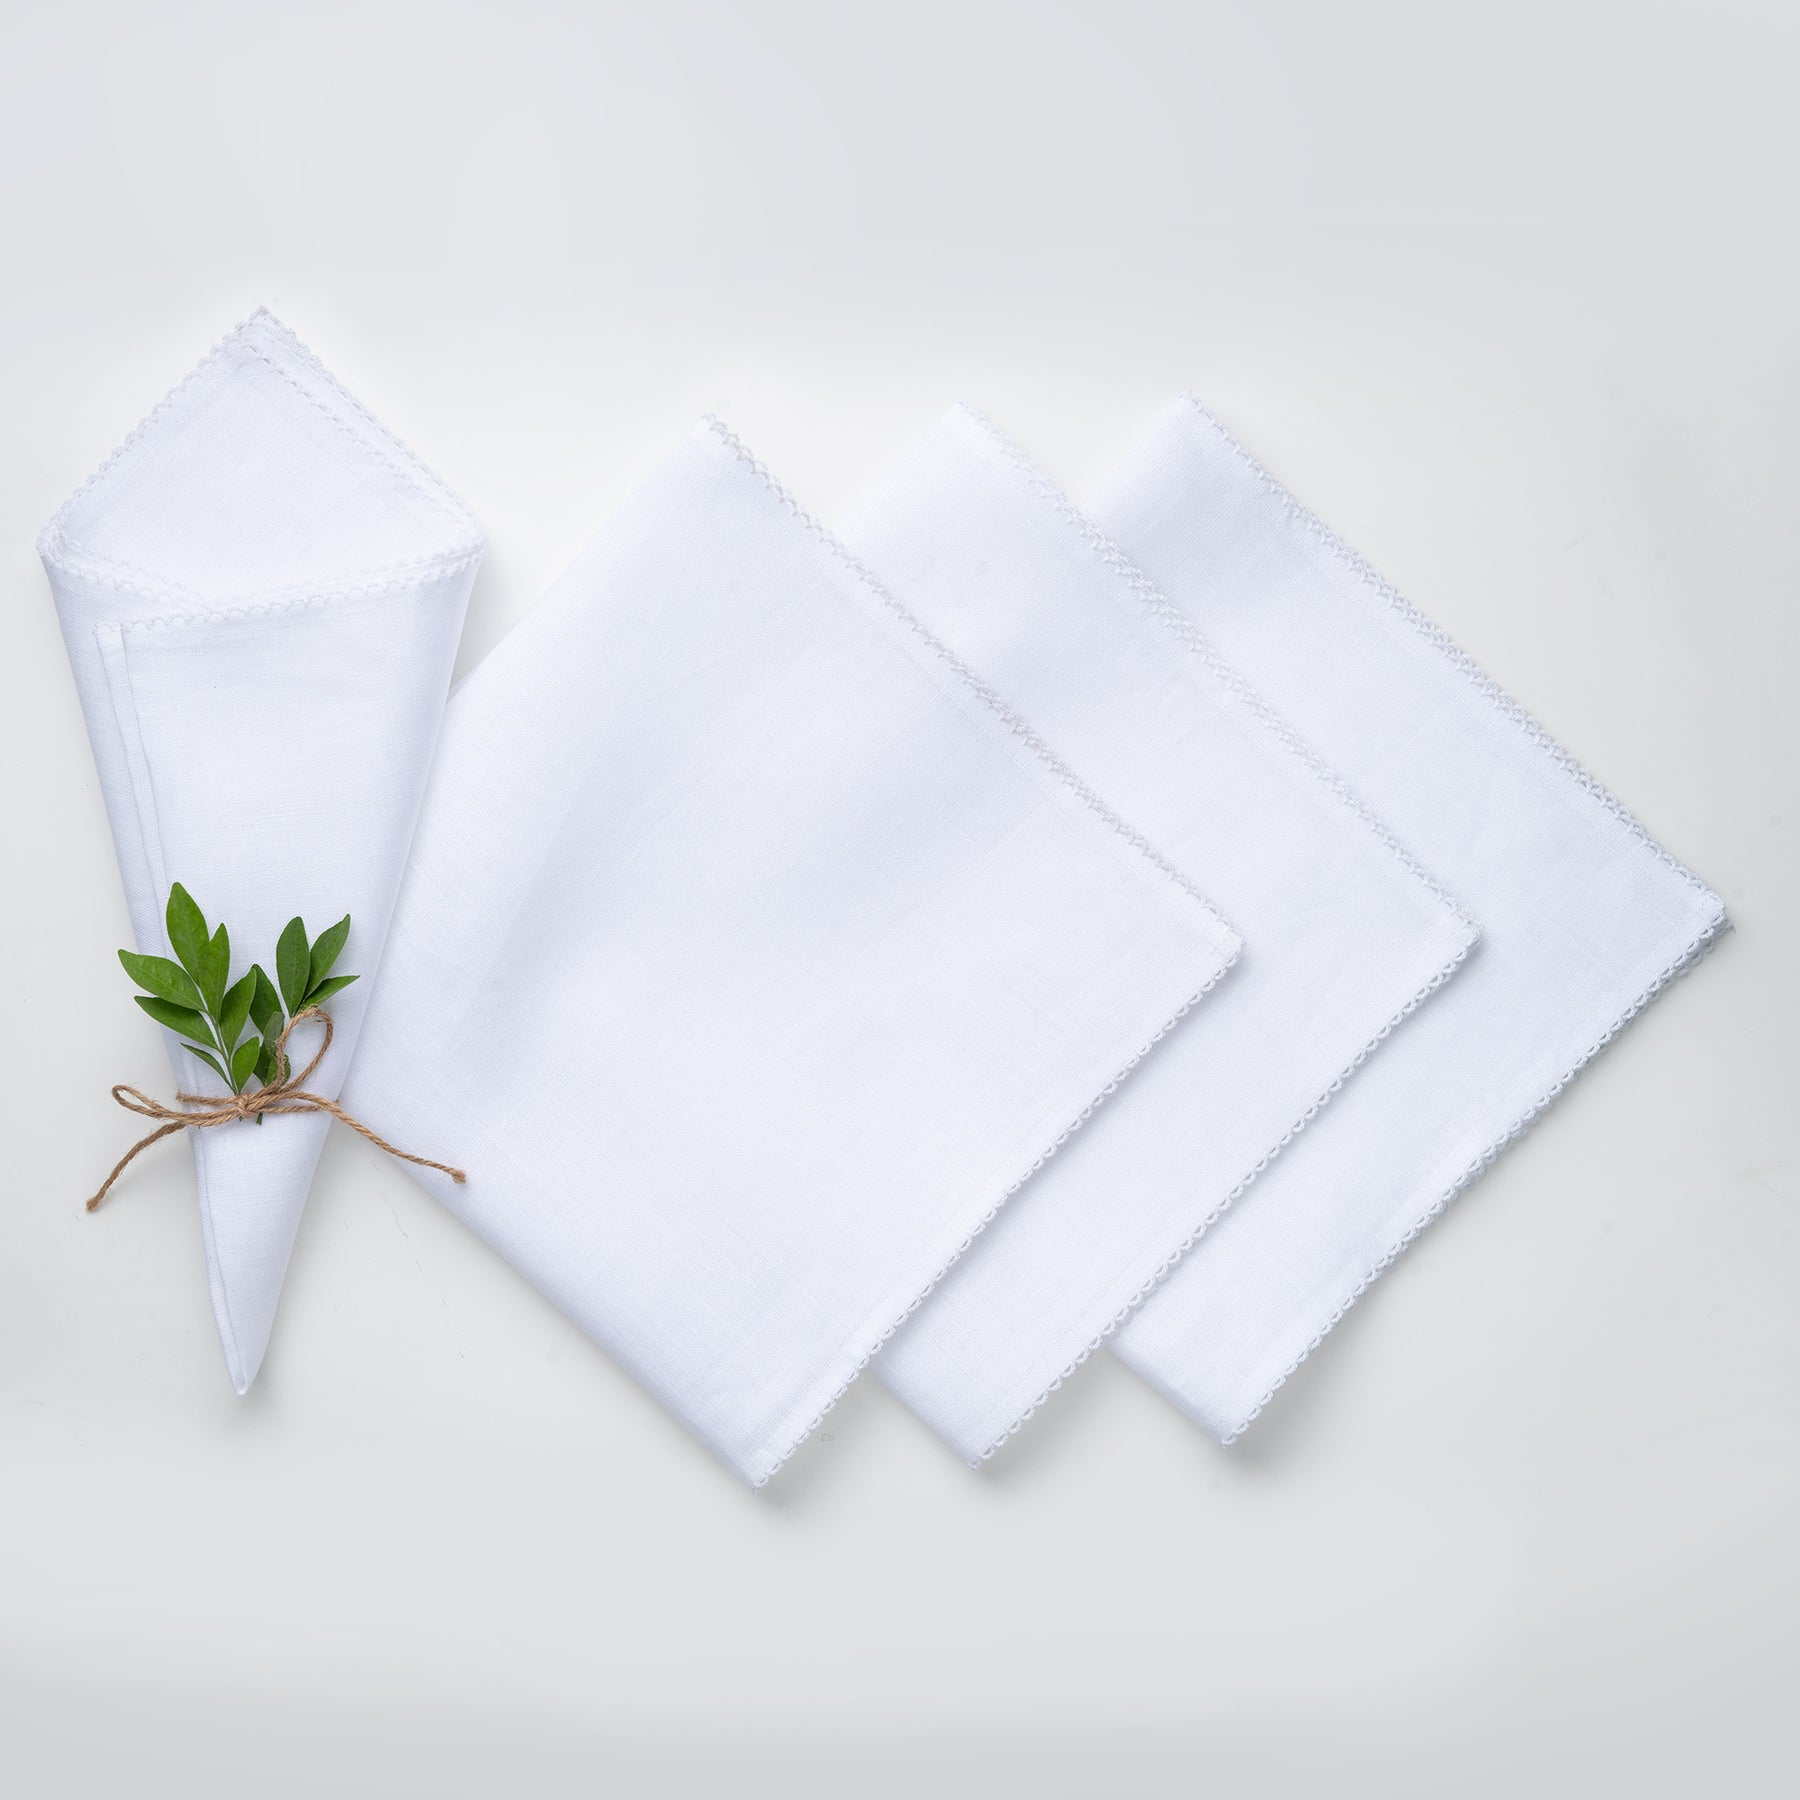 White & White Linen Dinner Napkins 20 x 20 Inch Set of 4 - Whipstitch